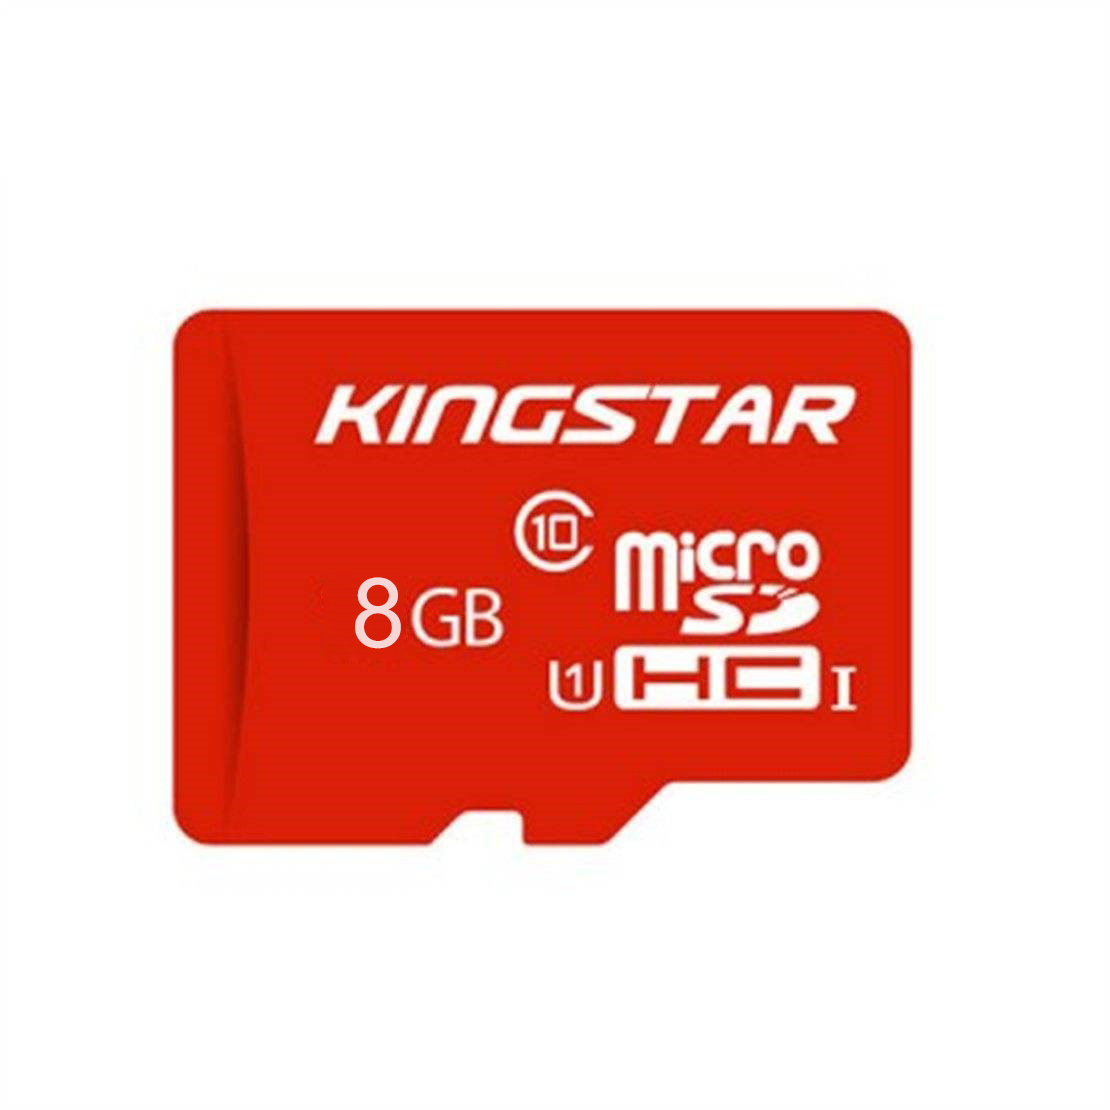 کارت حافظه microSDHC کینگ استار کلاس 10 استاندارد UHS U1 سرعت 85MBps ظرفیت 8 گیگابایت